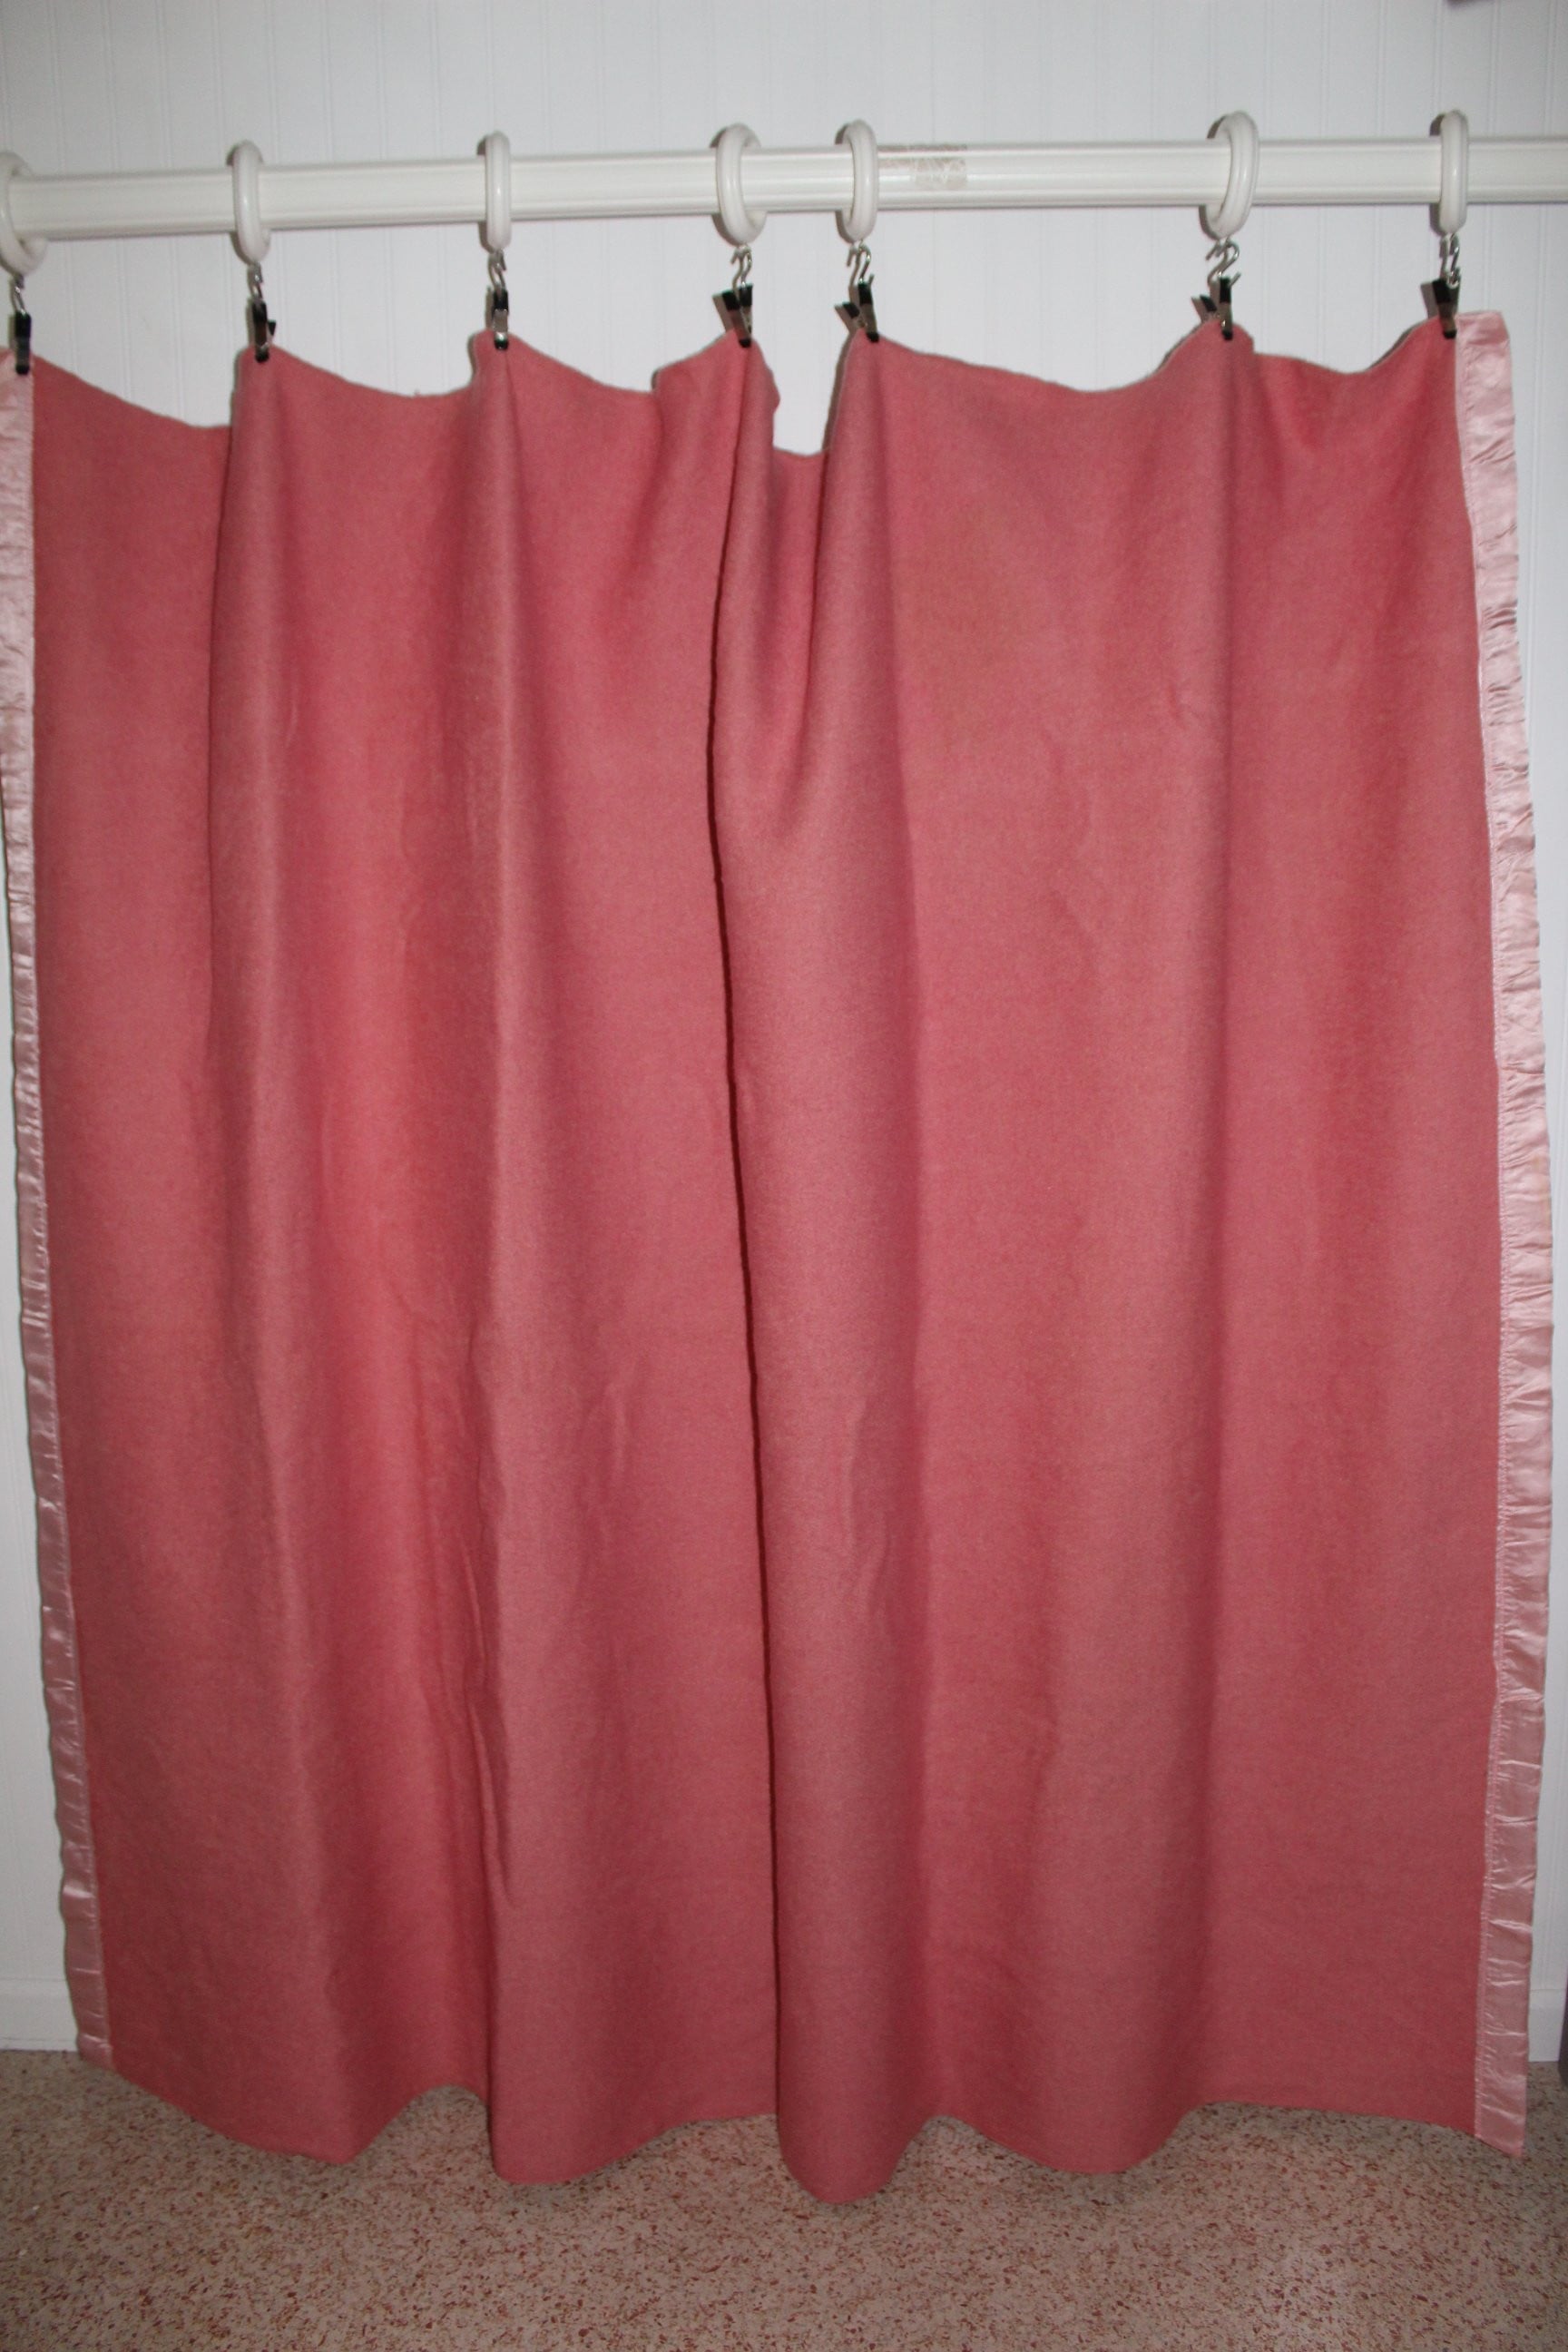 Blue Hill Wool Blanket by Draper Bros Vintage Rose Pink 66" X 80" All Season unusual